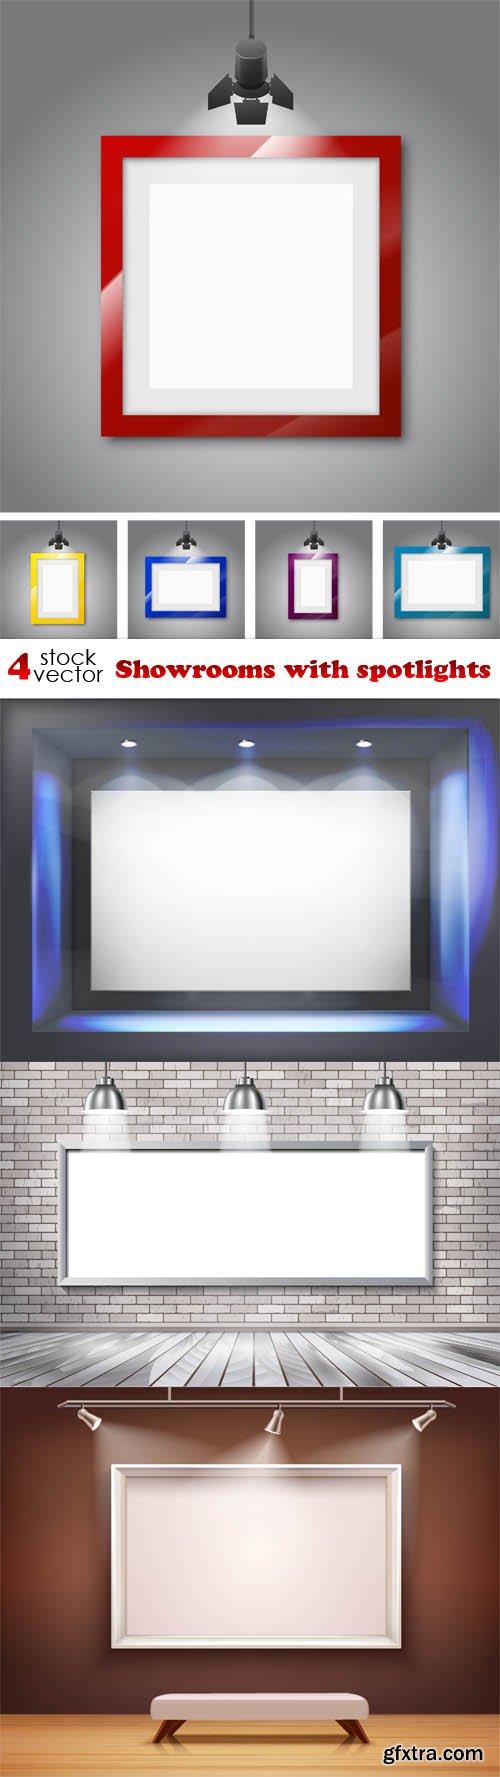 Vectors - Showrooms with spotlights